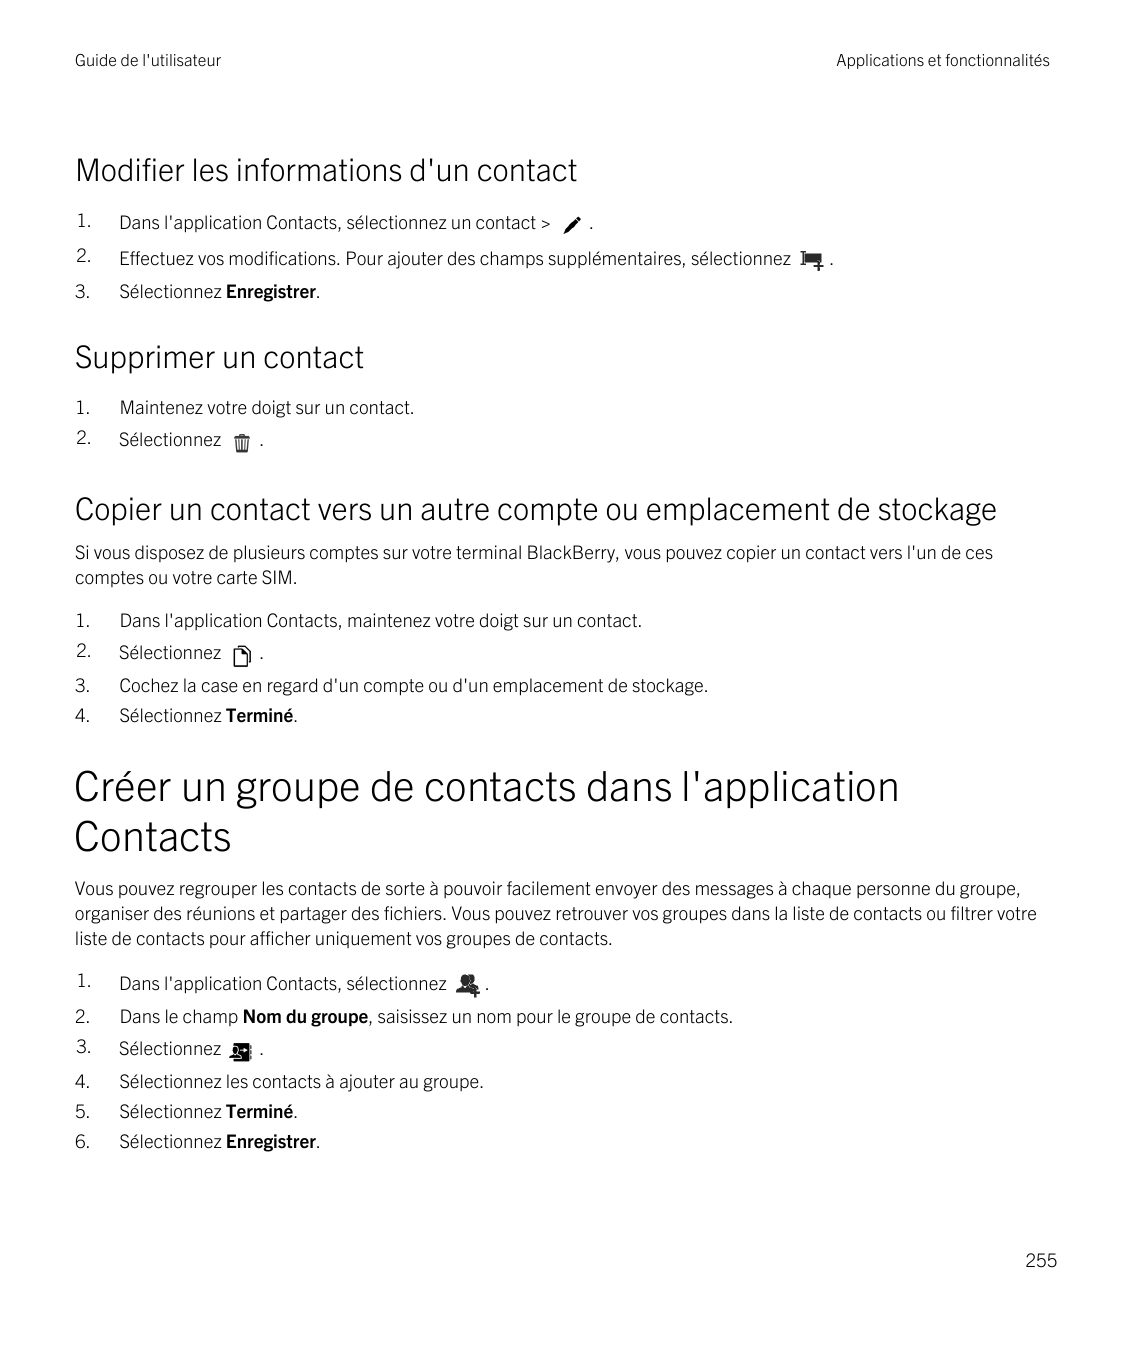 Guide de l'utilisateurApplications et fonctionnalitésModifier les informations d'un contact1.Dans l'application Contacts, sélect